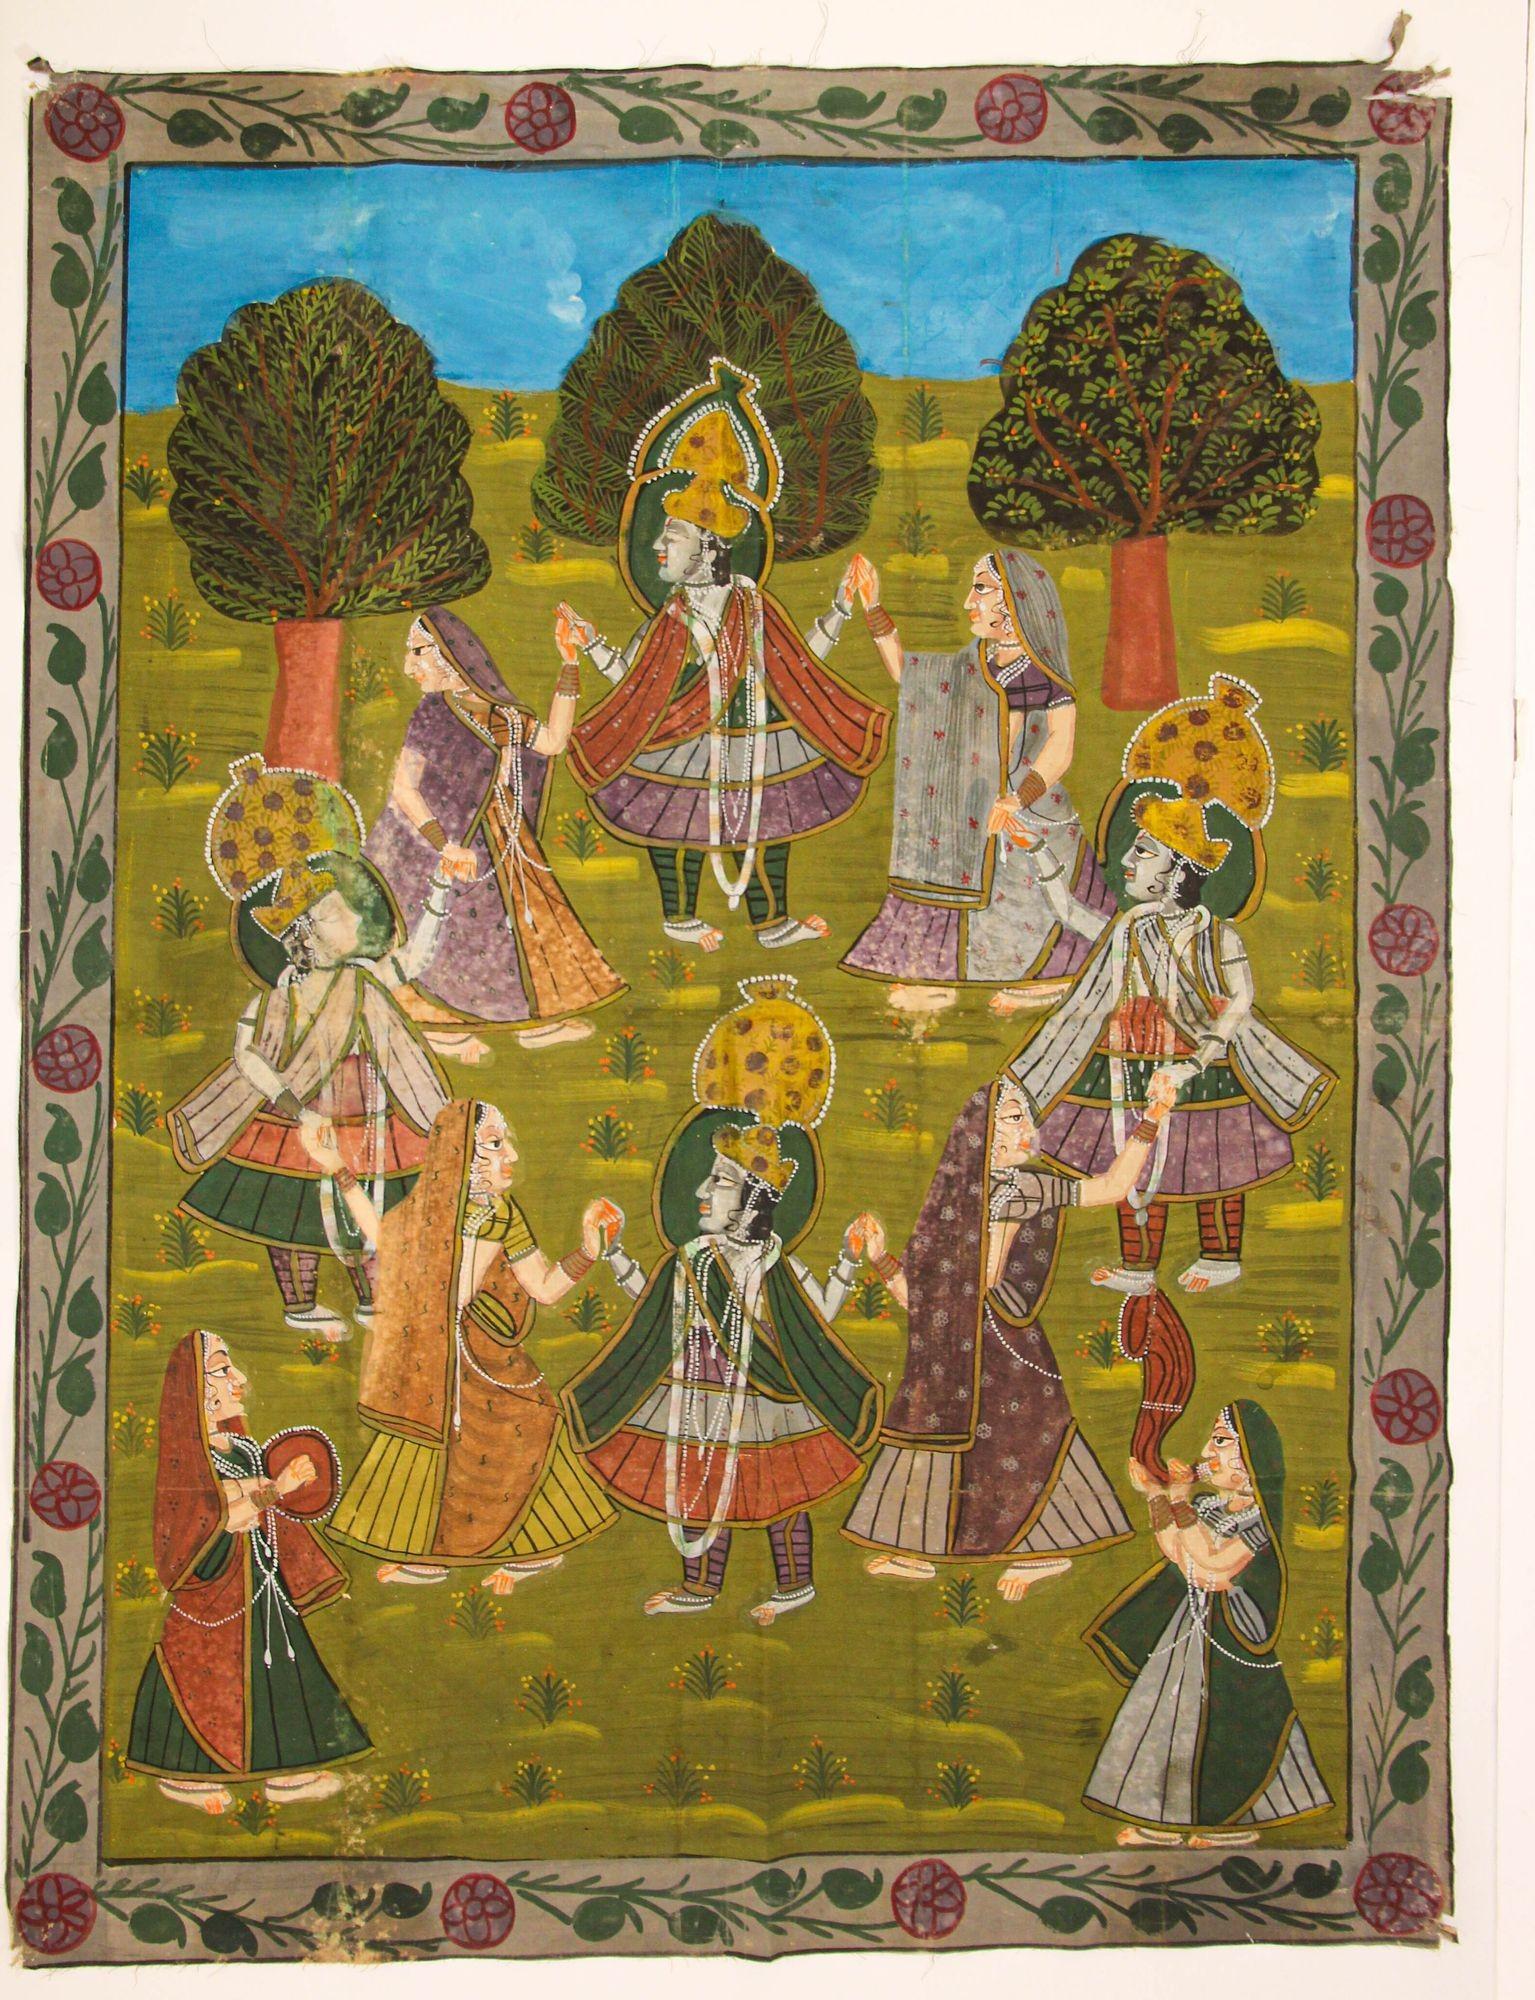 Große Vintage Pichhavai Malerei von Krishna mit weiblichen Gopis Tanzen.
Buntes, handbemaltes Pichhavai auf Baumwolltuch, um 1940, das eine Szene aus dem Leben Krishnas in einem Garten zeigt.
Einzigartige Pichhavai-Malerei von Krishna mit tanzenden